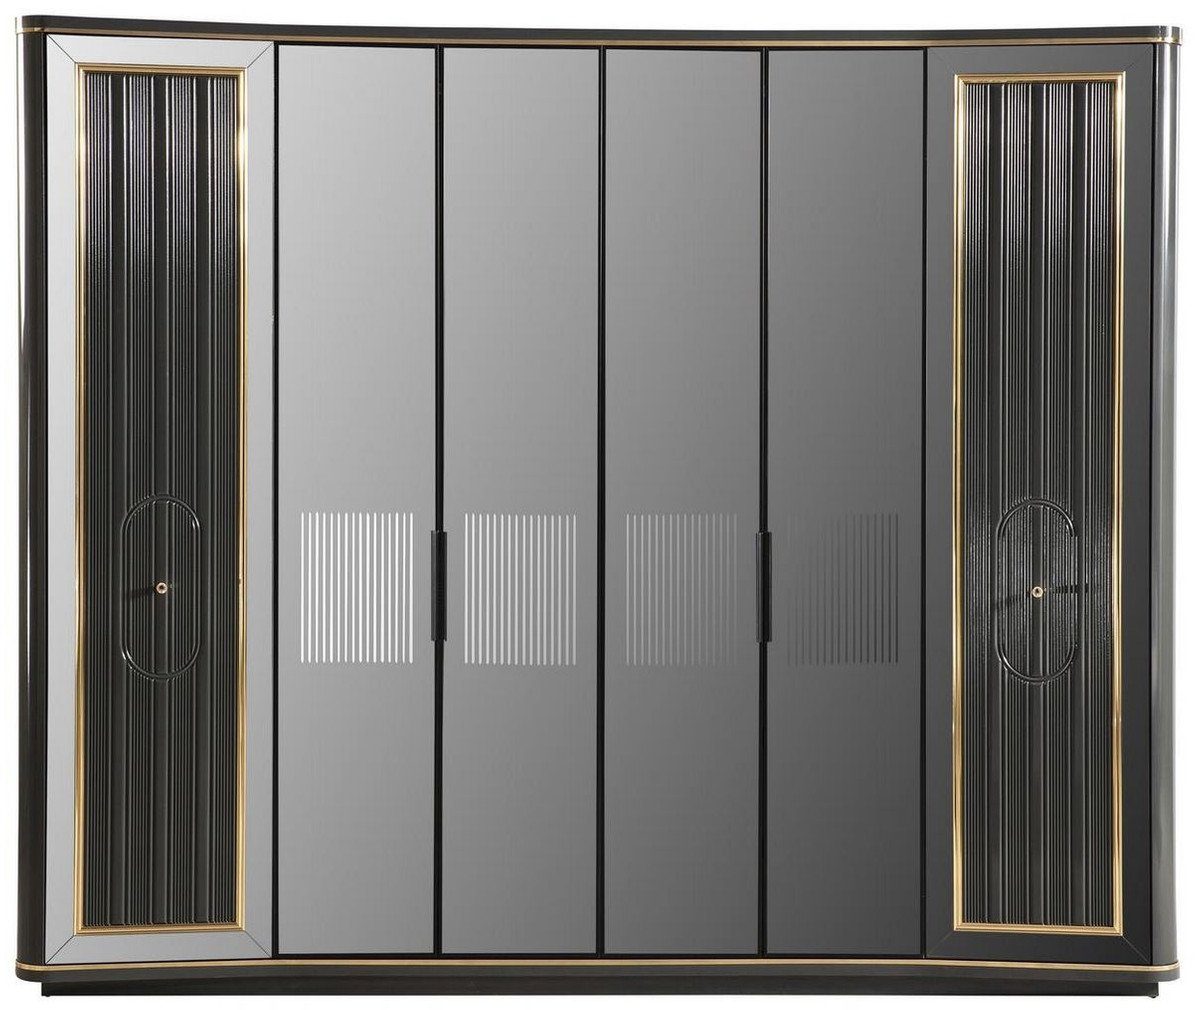 Casa Padrino Kleiderschrank Luxus Art Deco Schlafzimmerschrank Grau / Gold 265 x 67 x H. 220 cm - Edler Massivholz Kleiderschrank mit 6 verspiegelten Türen - Schlafzimmer Möbel - Luxus Qualität | Kleiderschränke